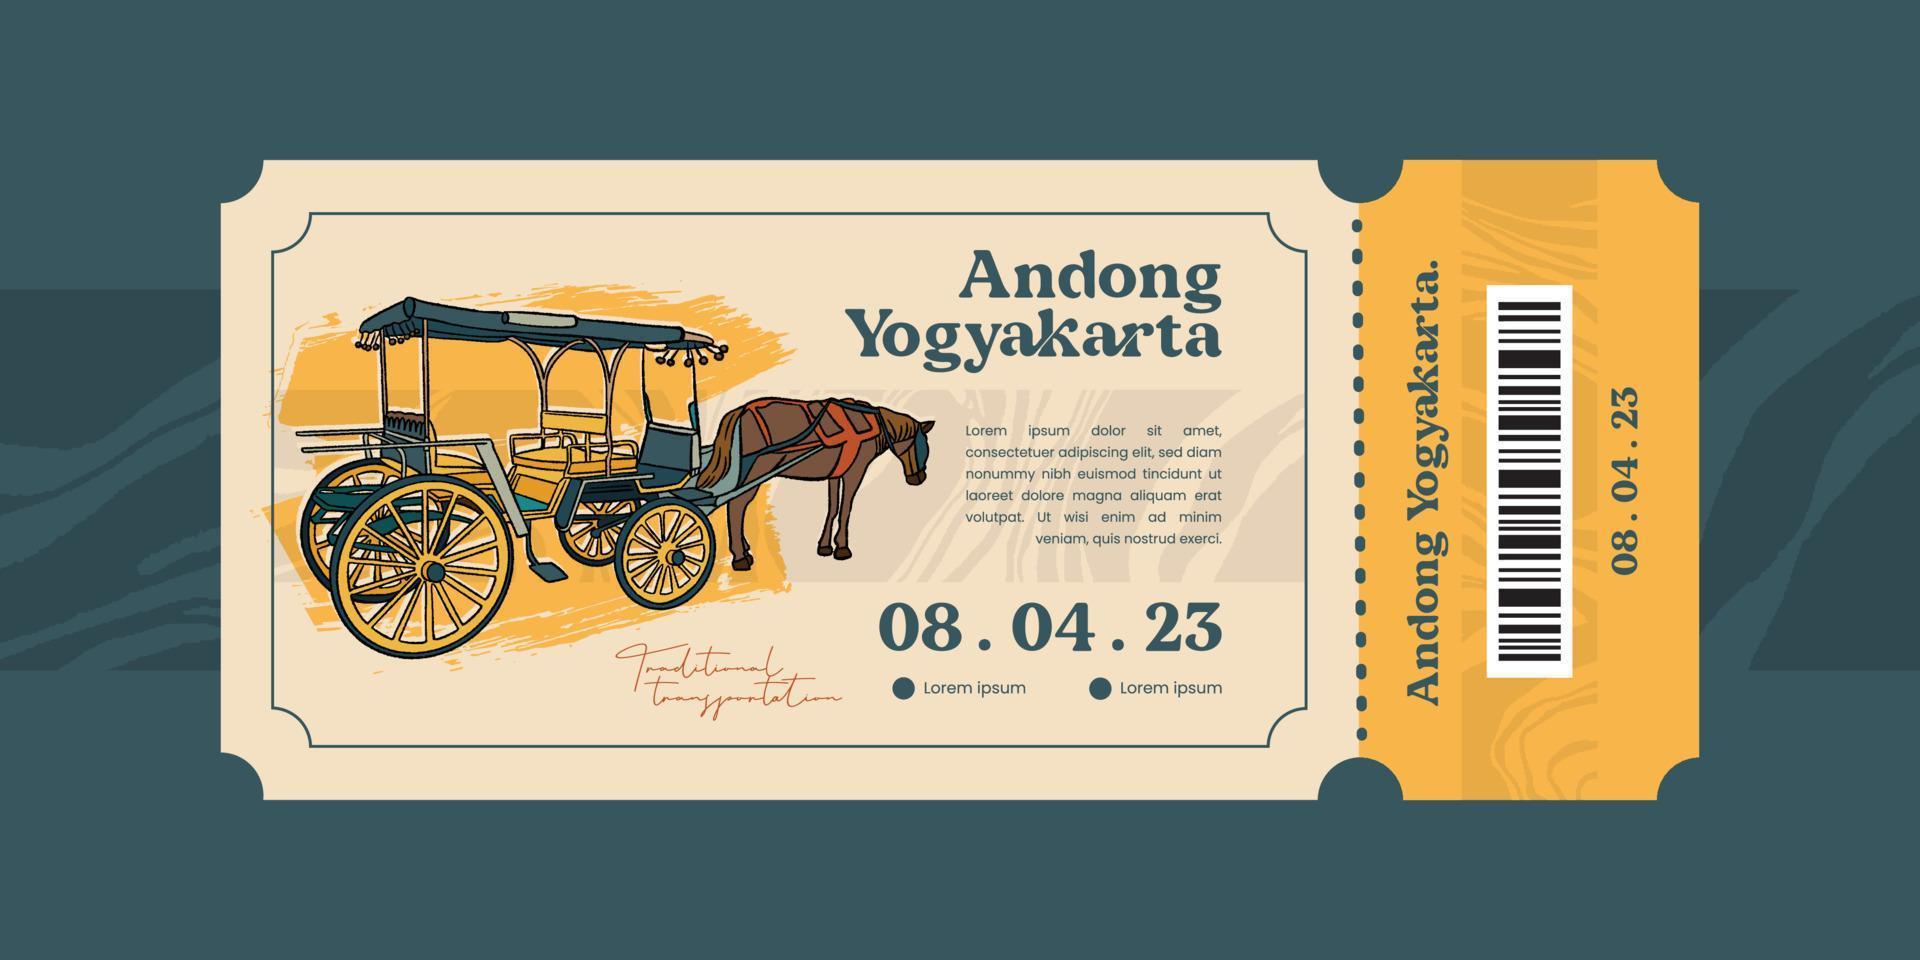 transporte tradicional andong yogyakarta ilustração. modelo de ideia de bilhete de turismo vintage vetor